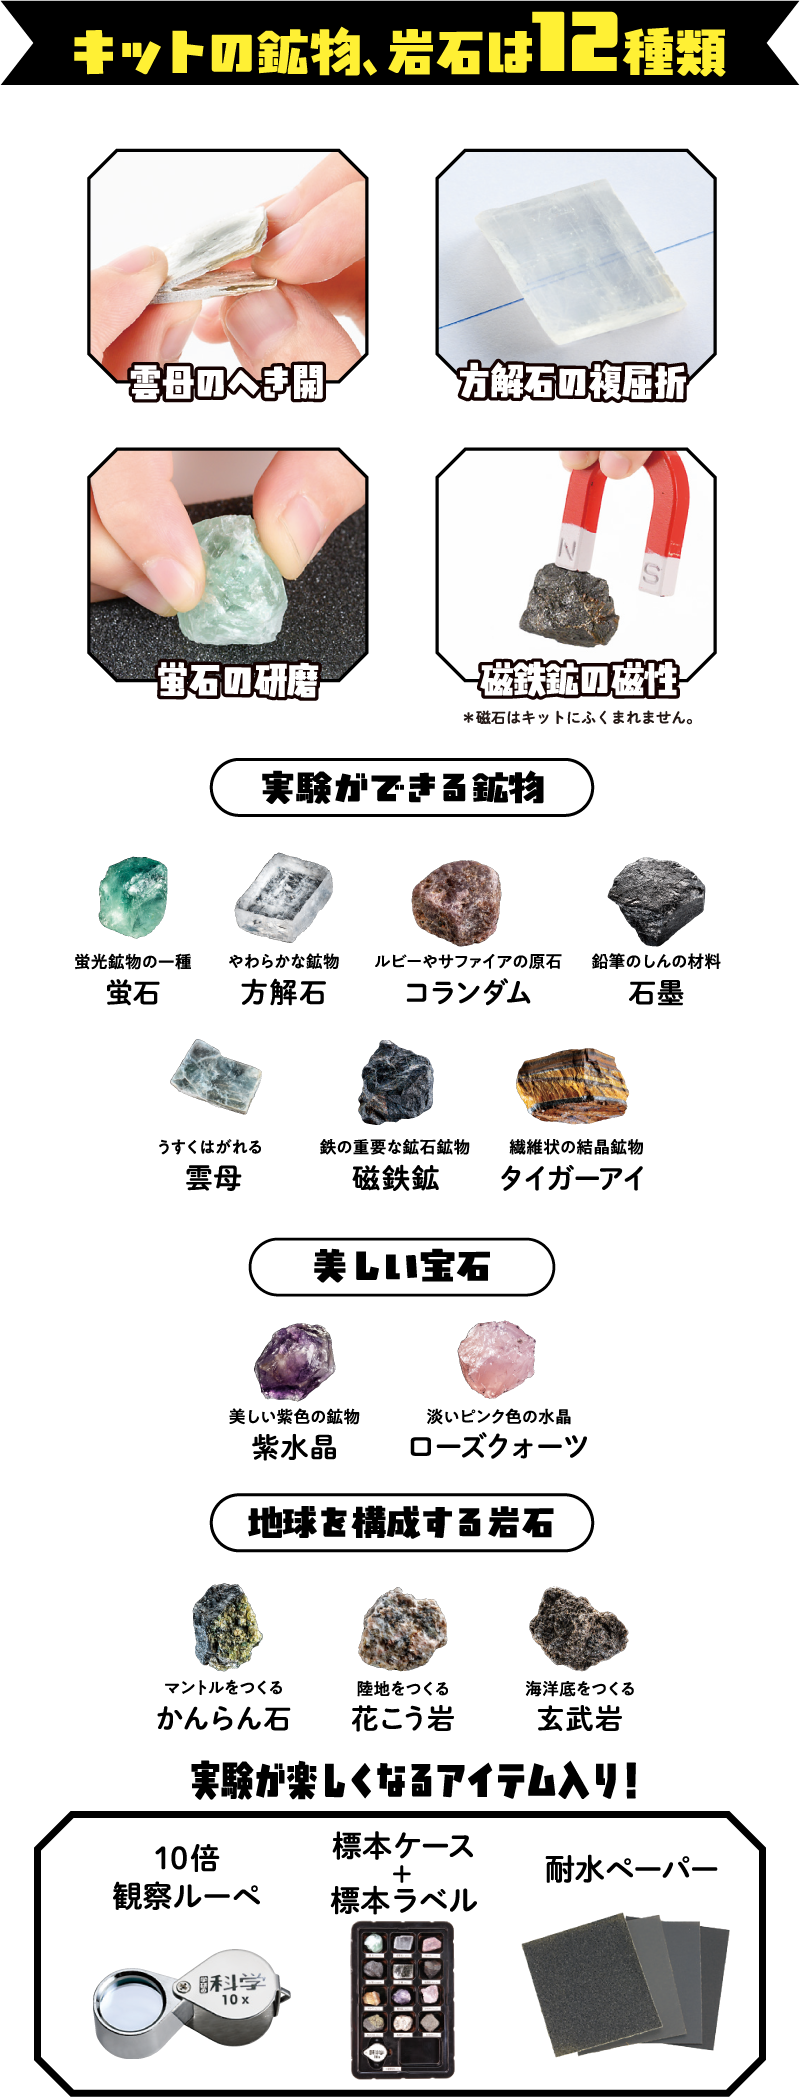 キットの鉱物、岩石は12種類